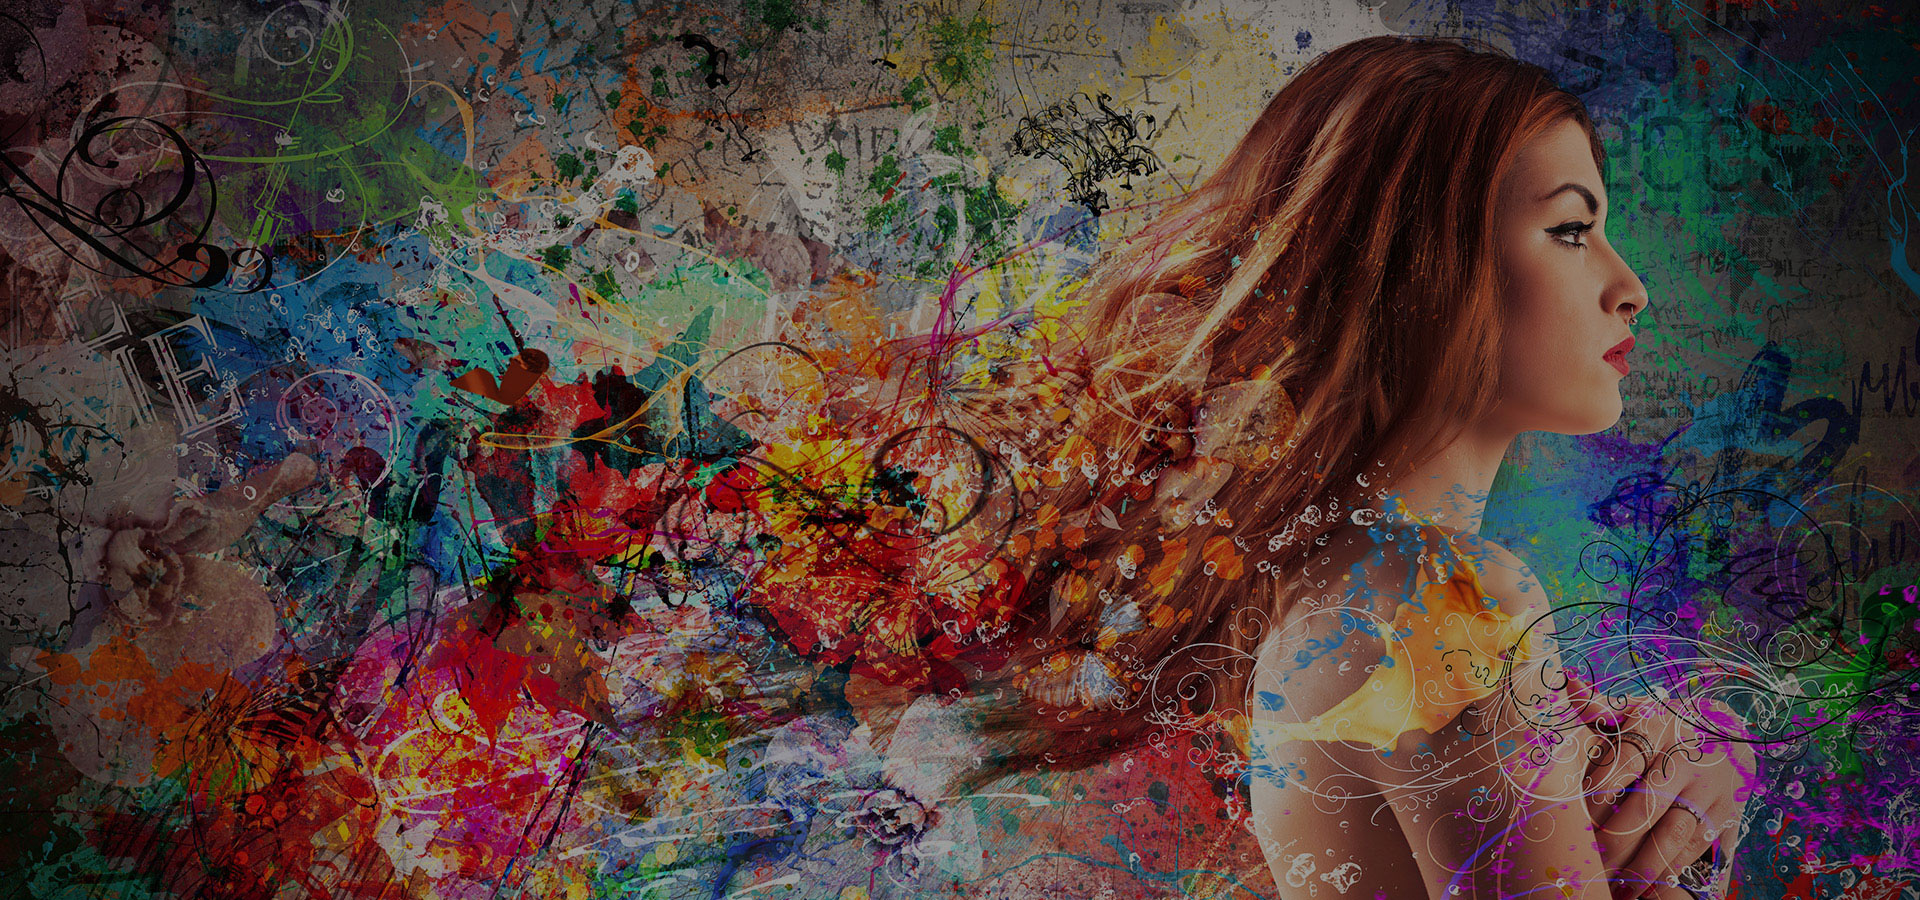 Jonge vrouw van opzij waarbij haar lange haar opgaat in een artistiek schildersdoek vol kleuren, tinten en intensiteiten.